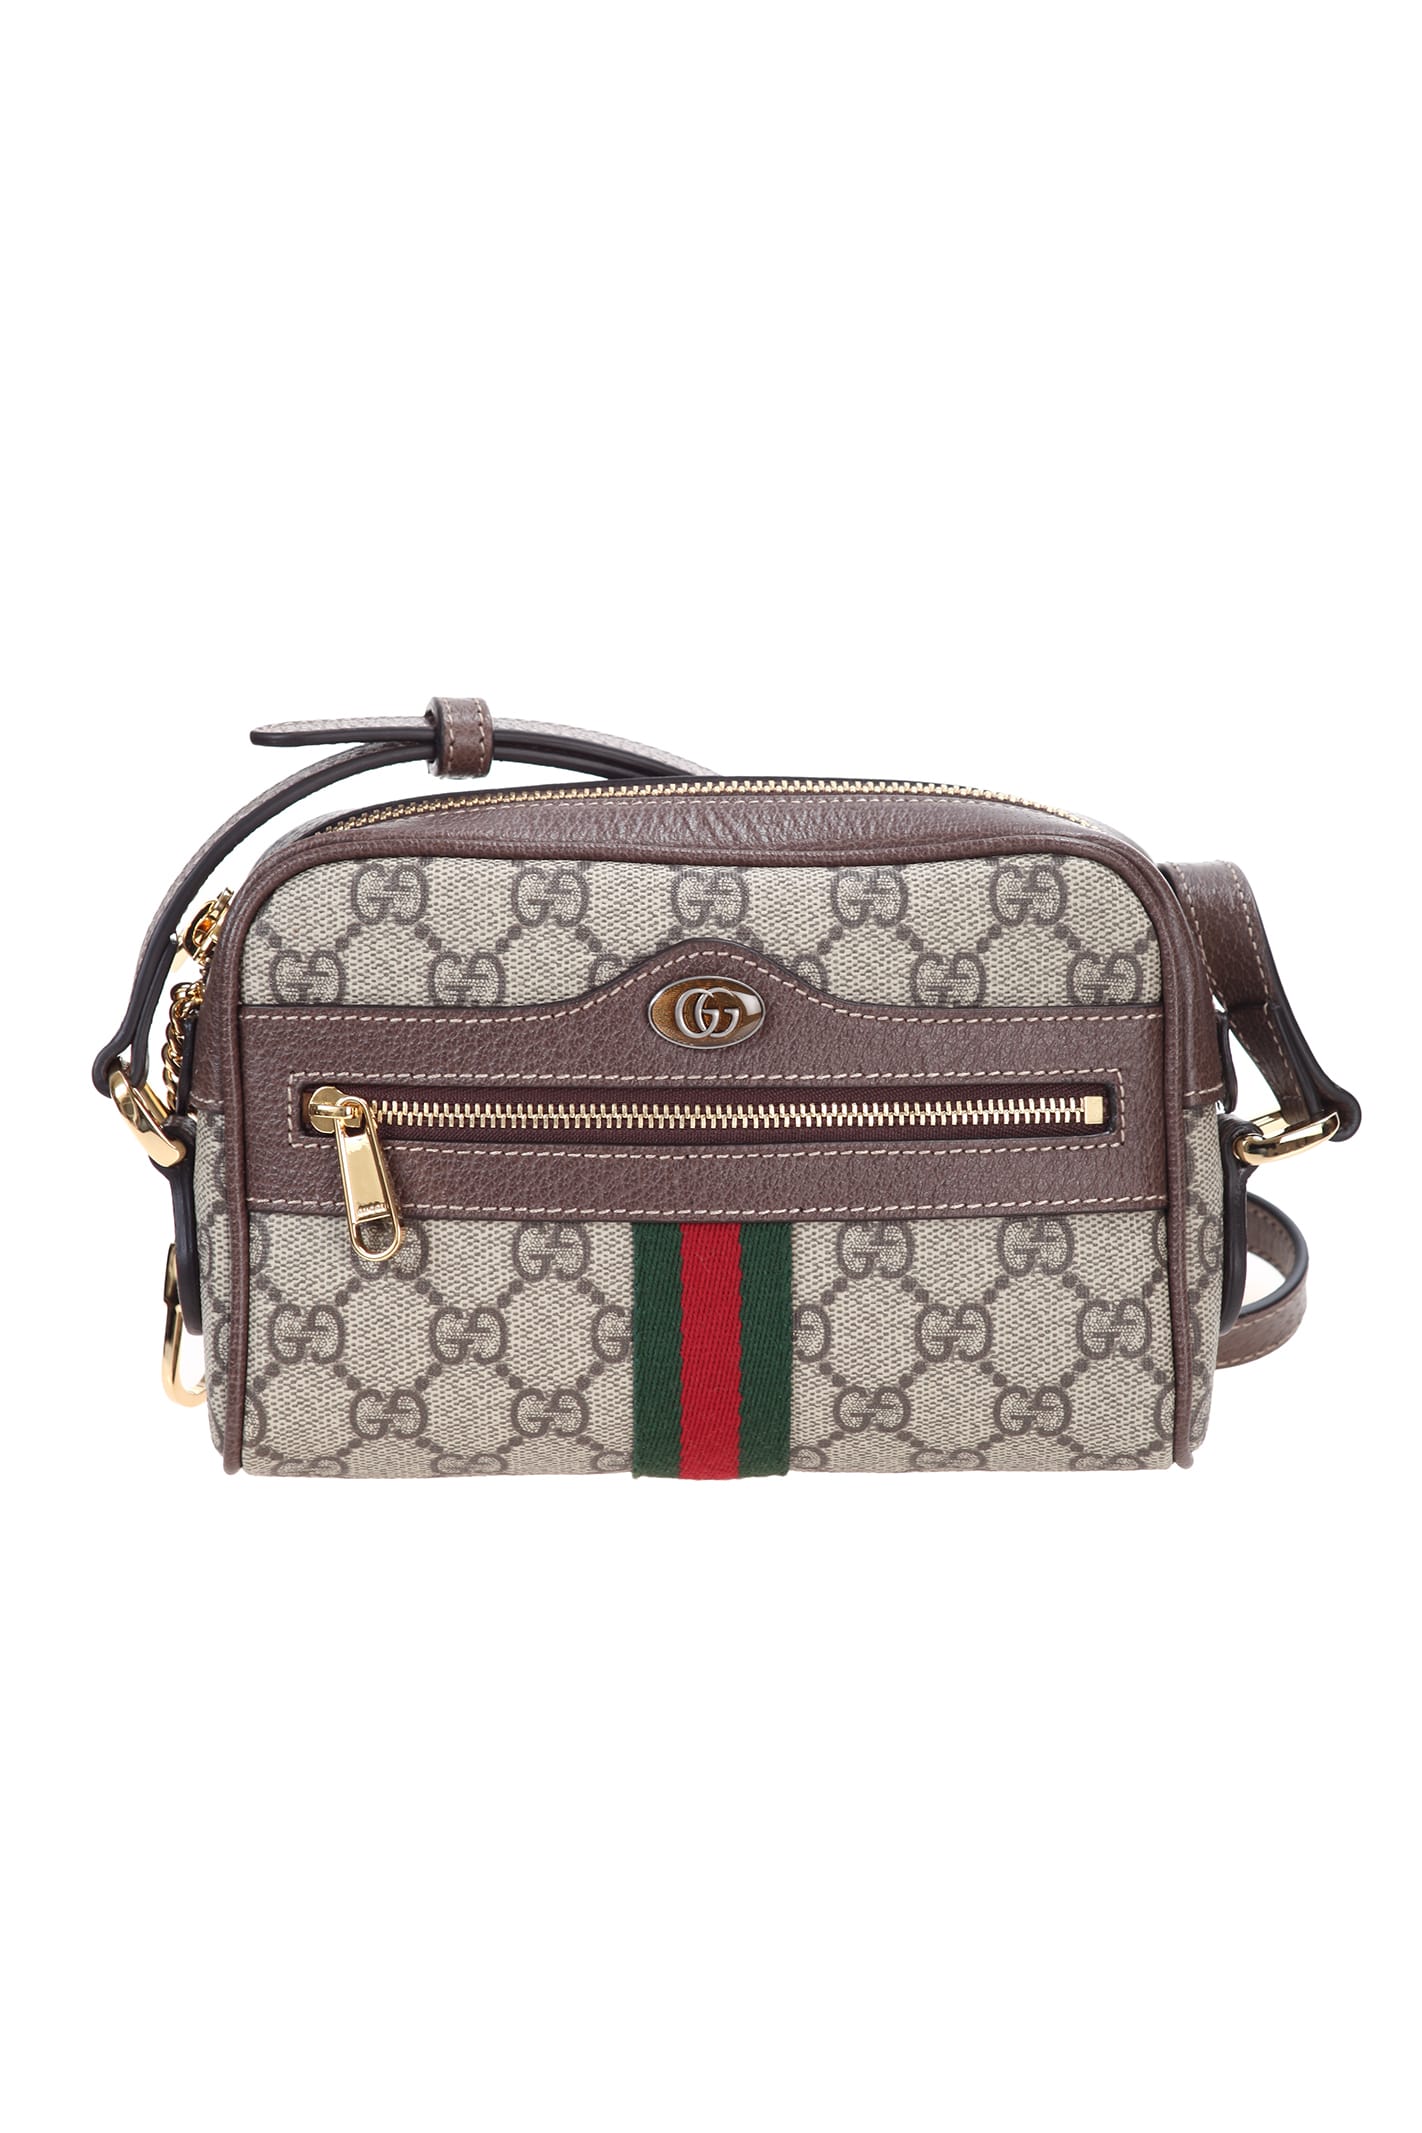 Gucci Ophidia Mini Bag In Beige